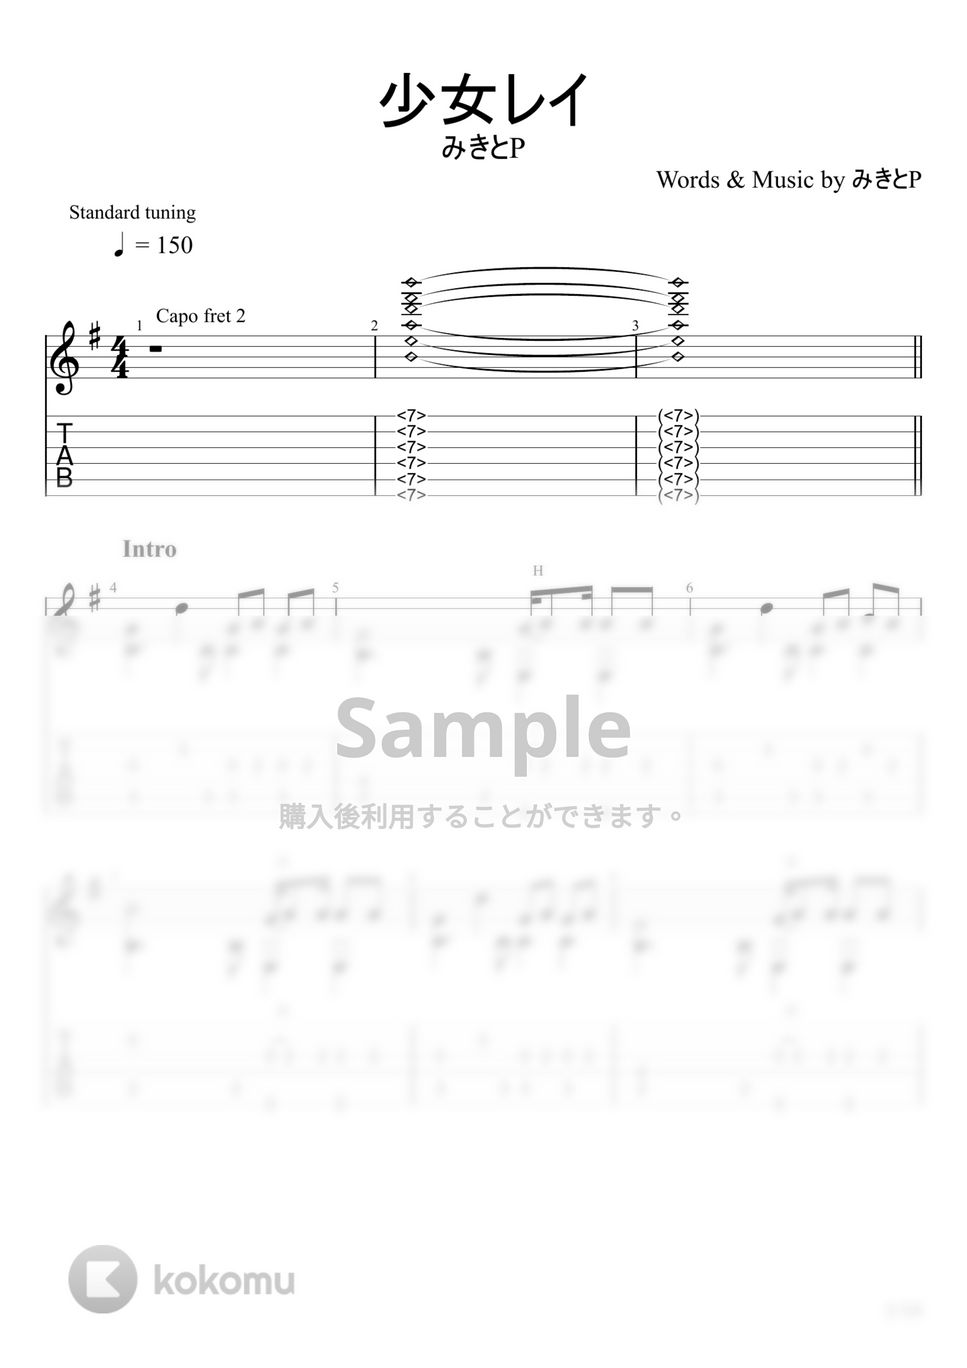 みきとP - 少女レイ (ソロギター) by u3danchou